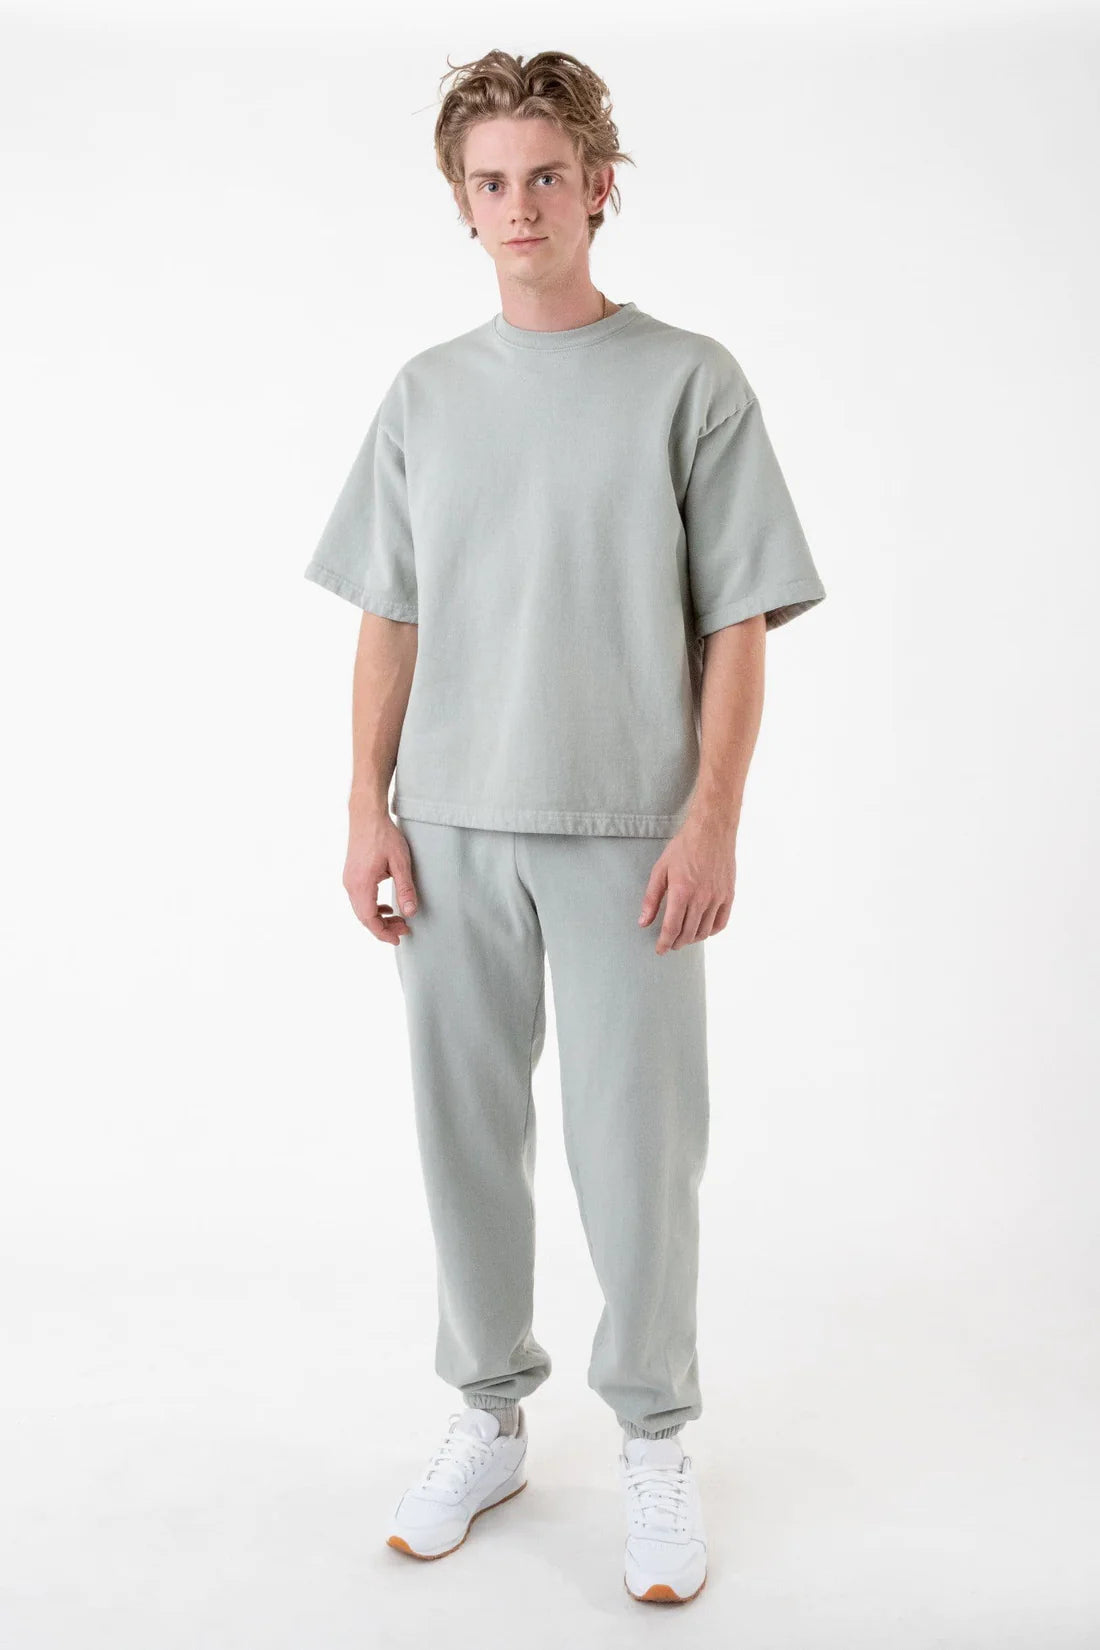 Los Angeles Apparel - HF04GD - Garment Dye Heavy Fleece Sweatpant